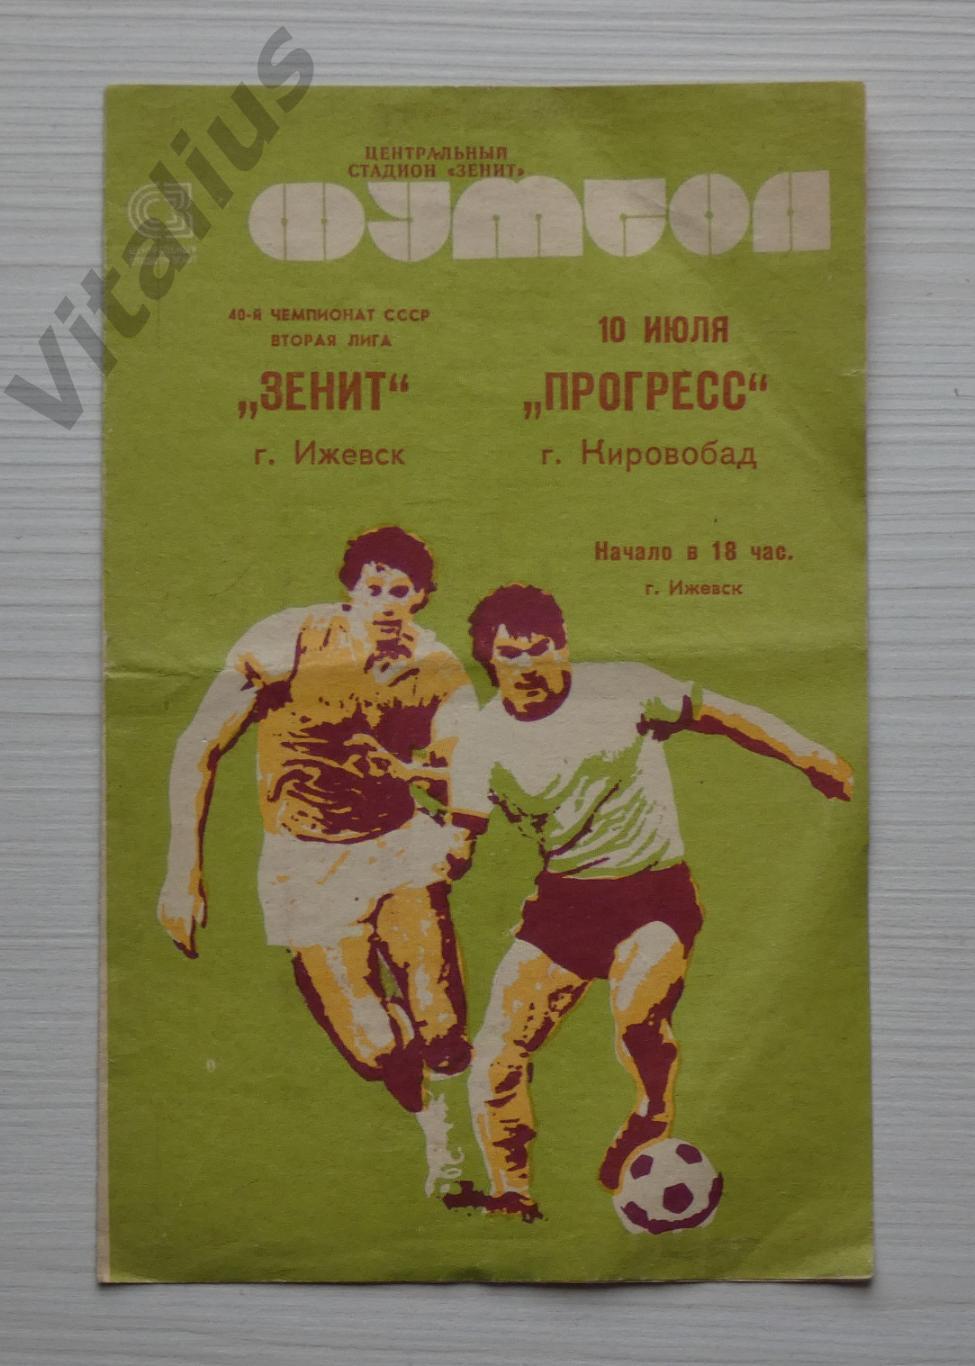 Программка футбол Зенит Ижевск - Прогресс Кировобад - Вторая лига 1978 год